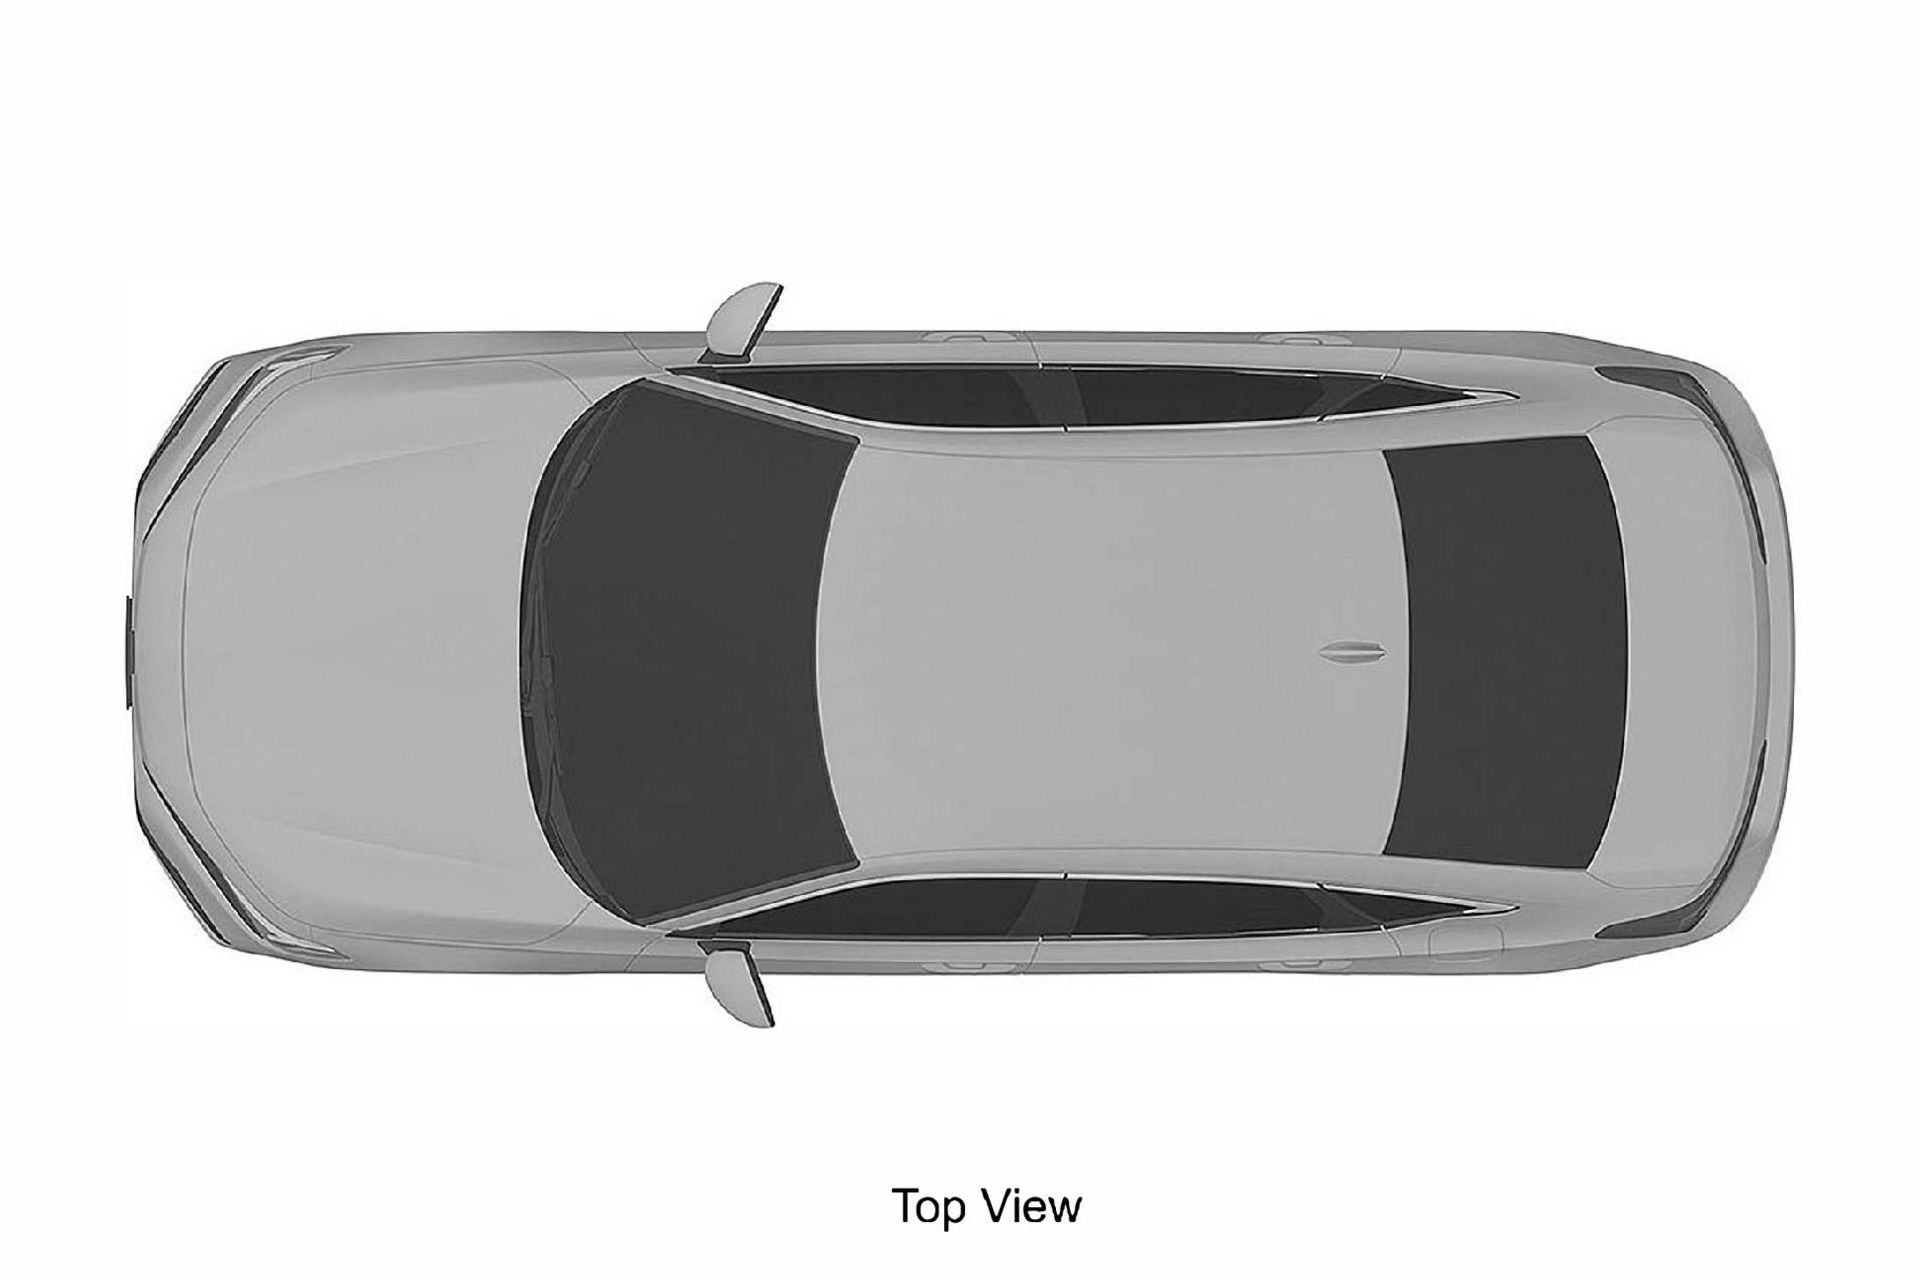 2022 Honda Civic Sedan ve Hatchback'in tasarımı patent görüntüleriyle ortaya çıktı